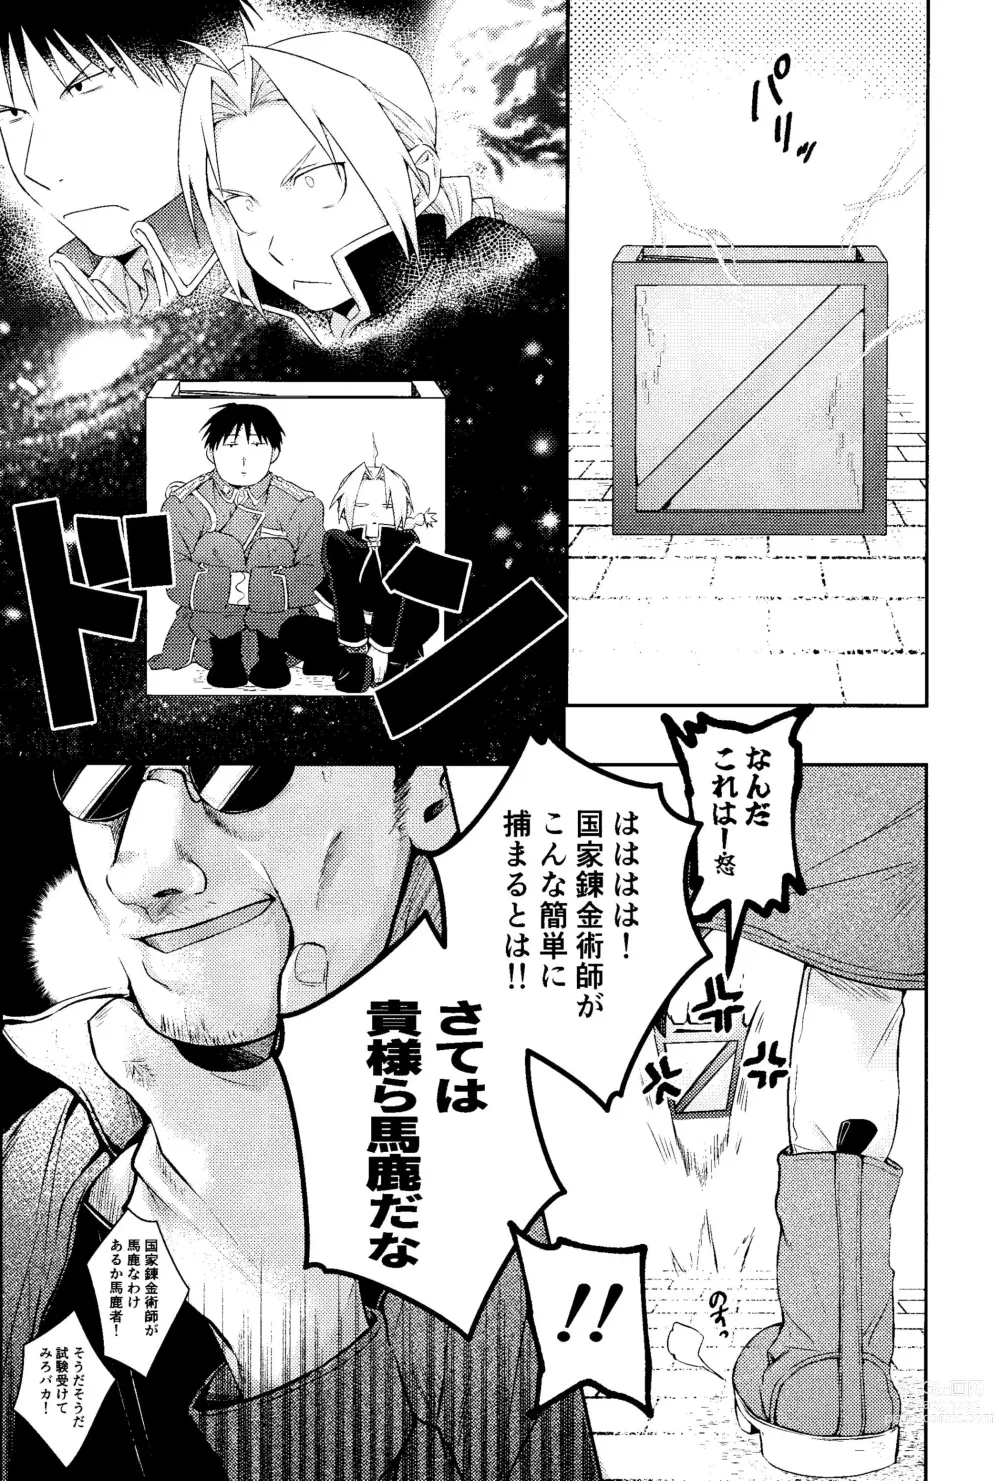 Page 6 of doujinshi Cliche!